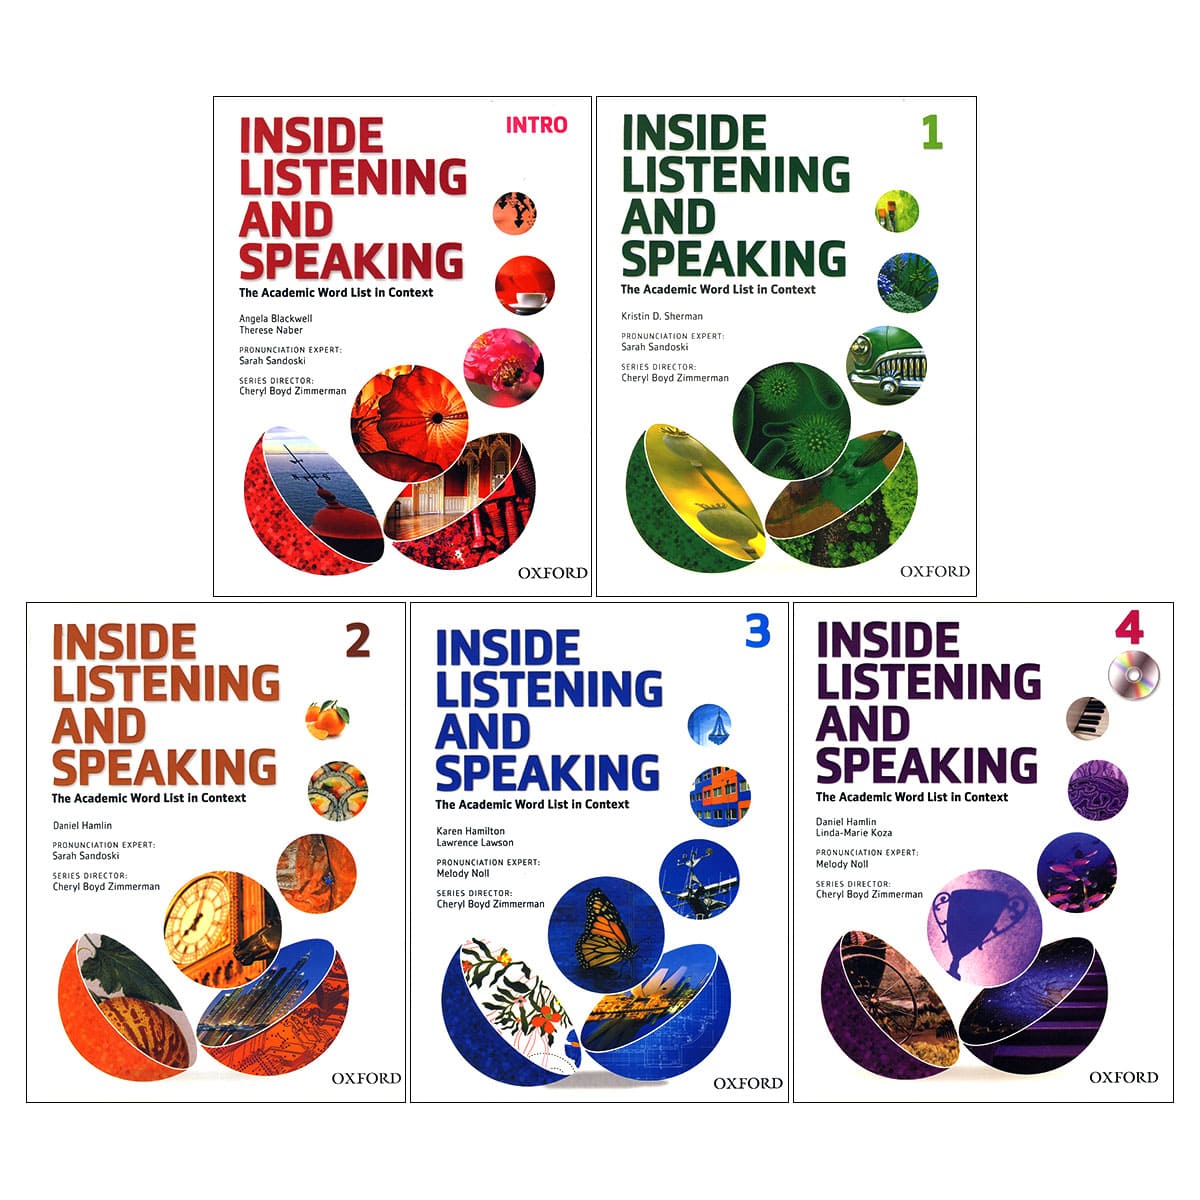 خرید کتاب زبان | فروشگاه اینترنتی کتاب زبان | Inside Listening and Speaking | اینساید لیسنینگ اند اسپیکینگ